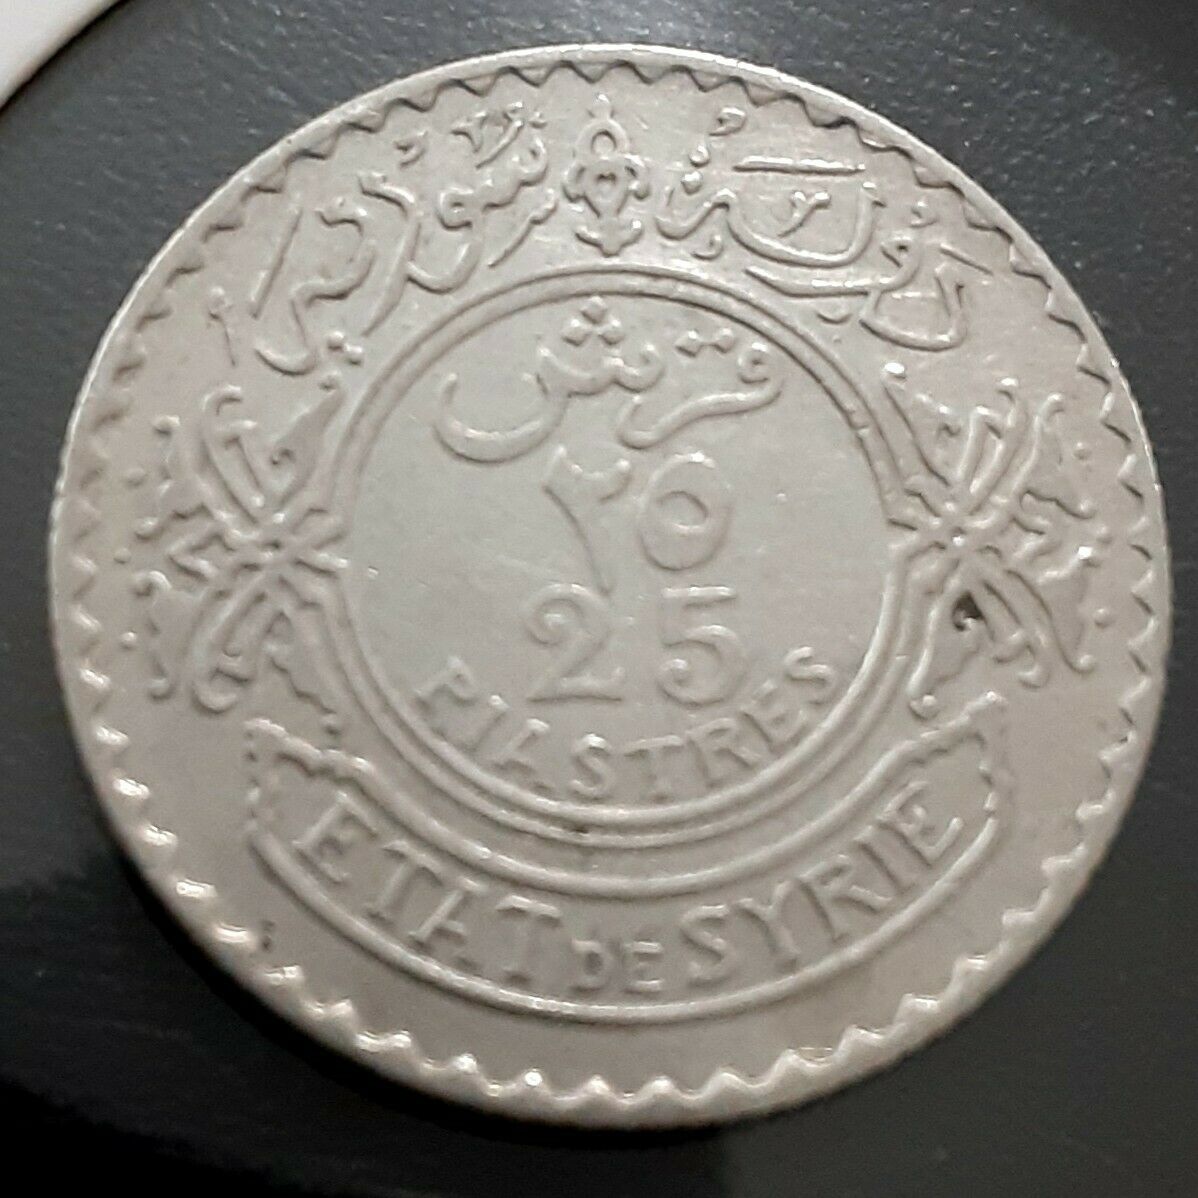 Paris Mint ٢٥ 25 PIASTRE SETAT DE SYRIE 1936 Scarce Silver Coin Xf